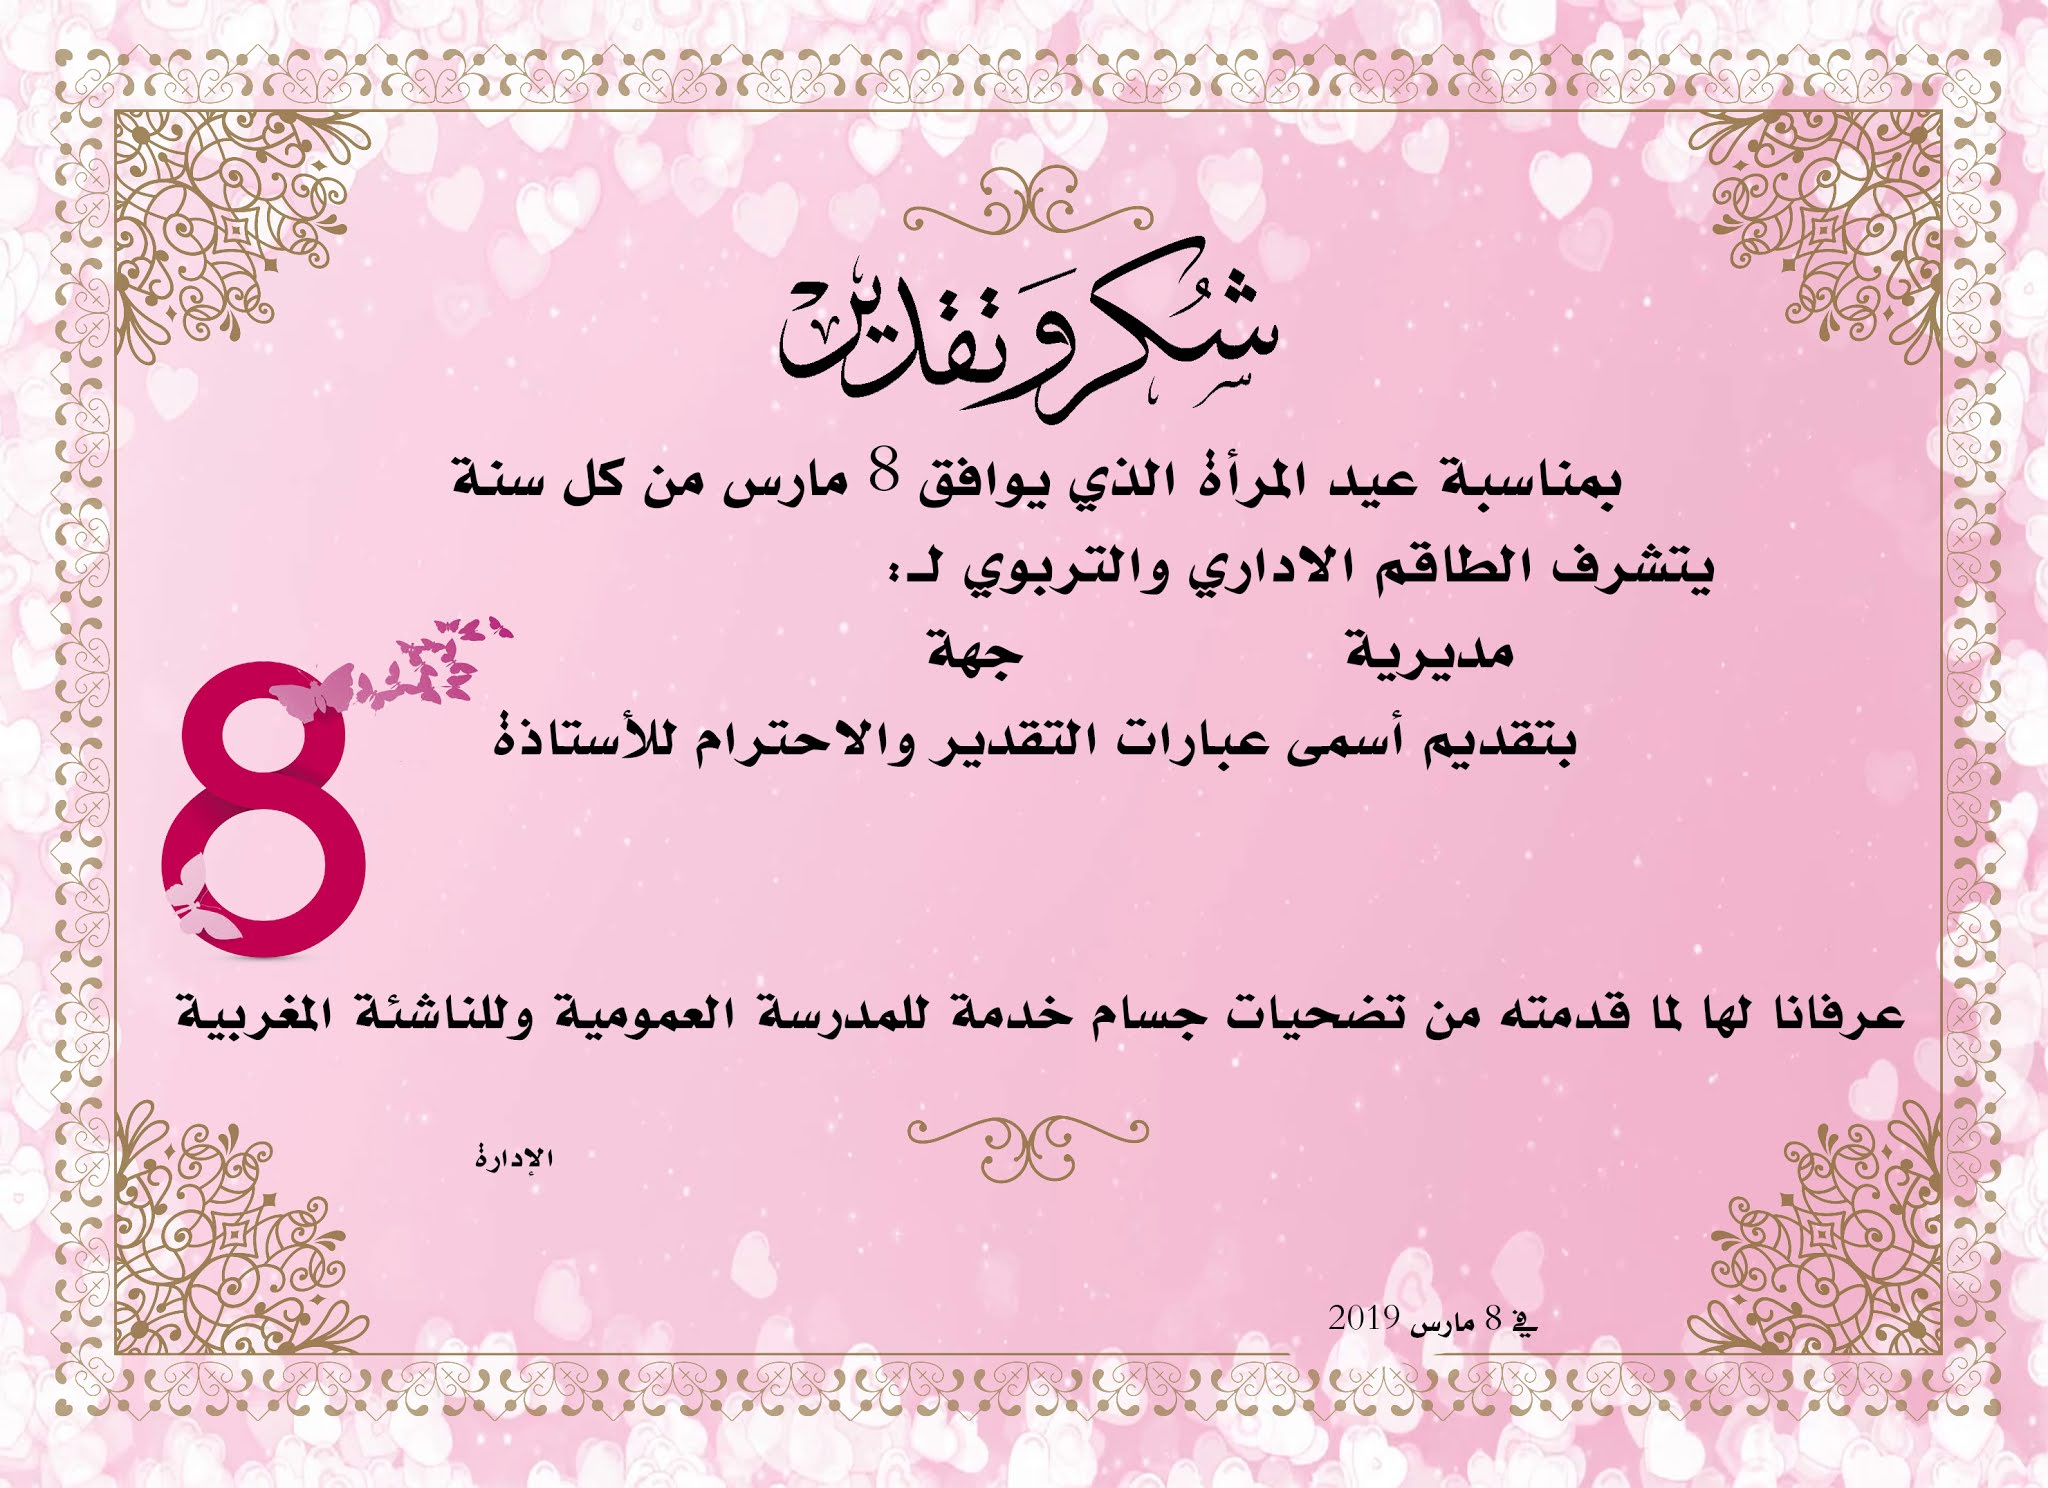 بطاقة شكر وتقدير للأستاذات بمناسبة عيد المرأة 8 مارس بصيغ مختلفة وقابلة للتعديل